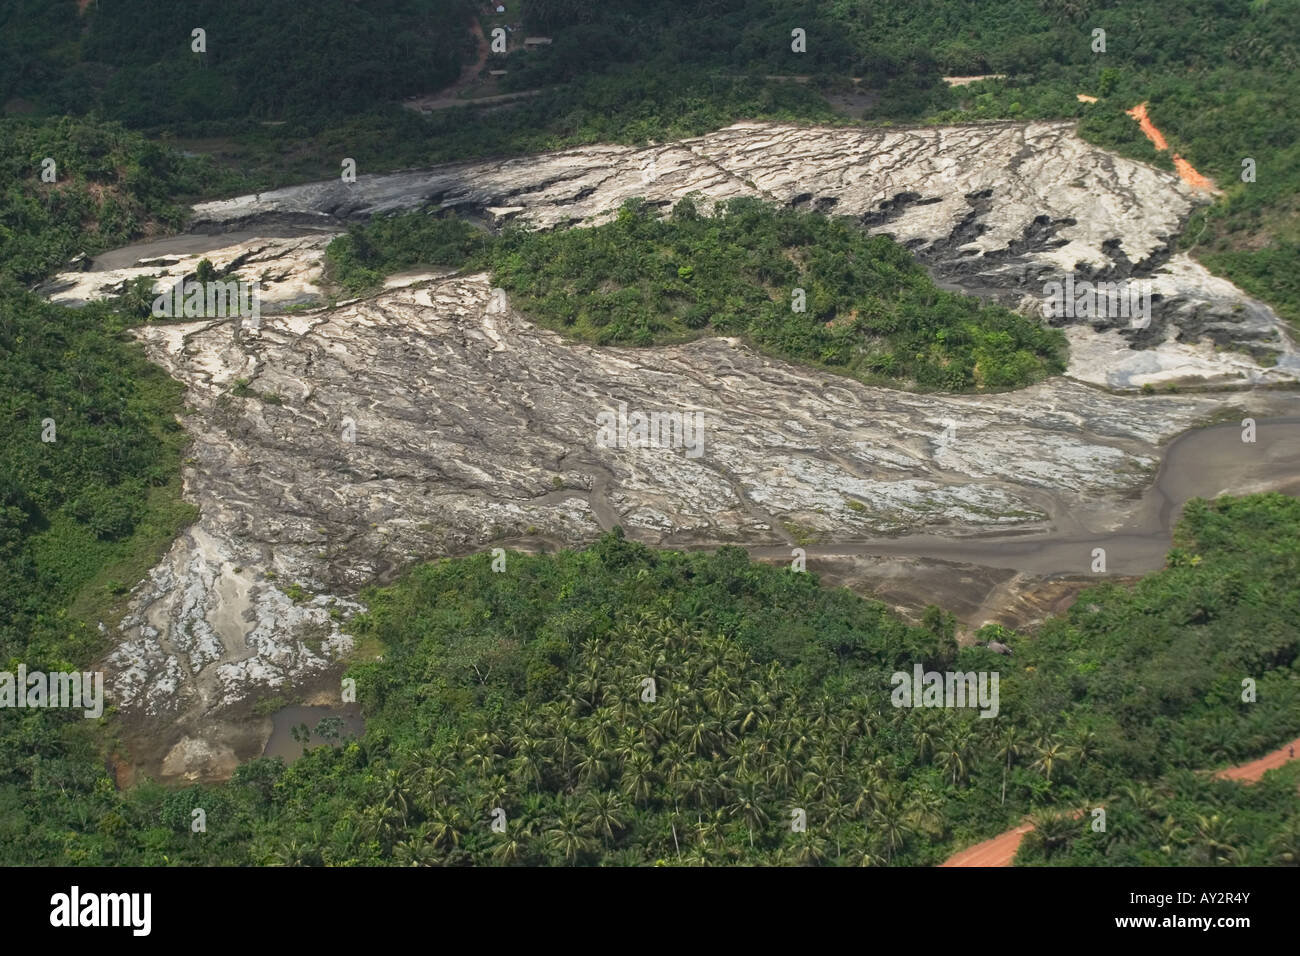 Luftaufnahme des kommerziellen Goldminen alten Halde dam mit Wand Scheitern zeigt Wasserrinne-Erosion und Umweltverschmutzung, Ghana Stockfoto